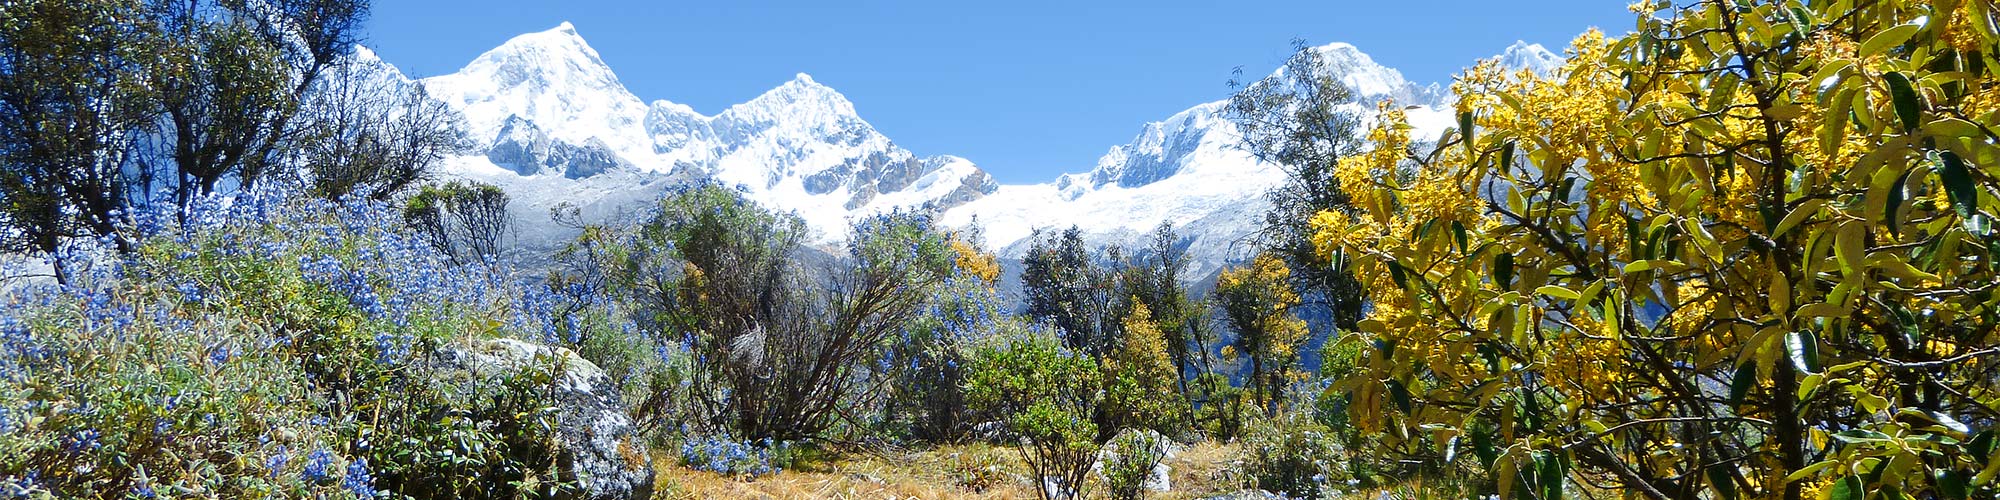 Peru Trekking Alpamayo